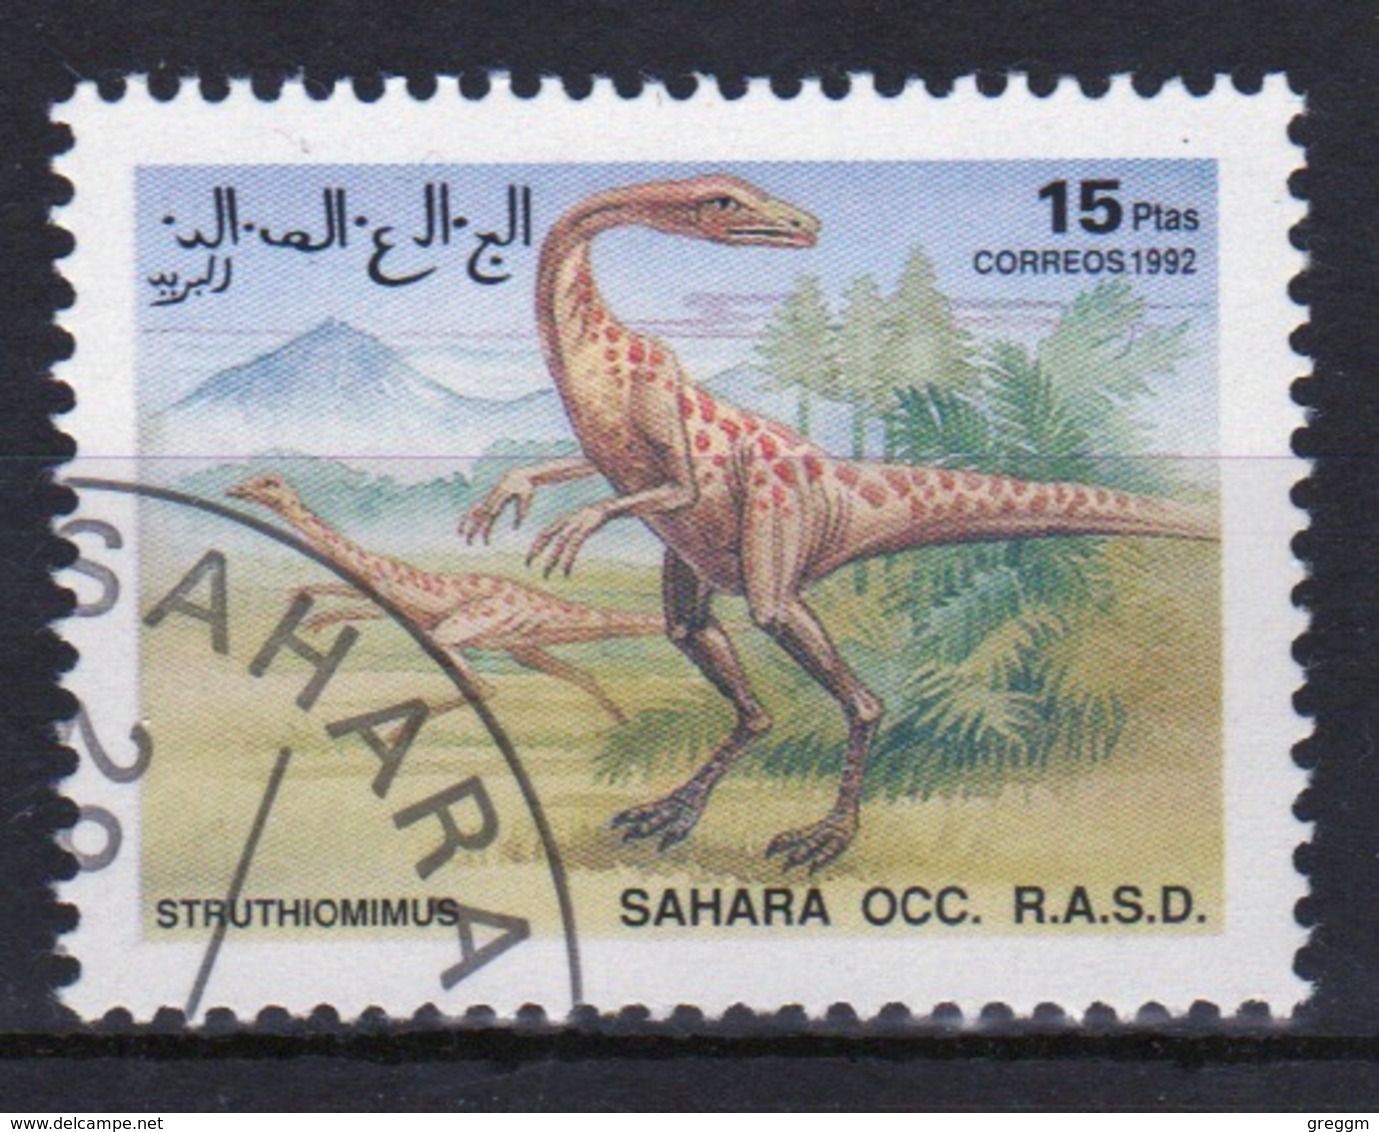 Sahara OCC 1992 Single 15 Ptas Stamp Highlighting Dinosaurs. - Cinderellas